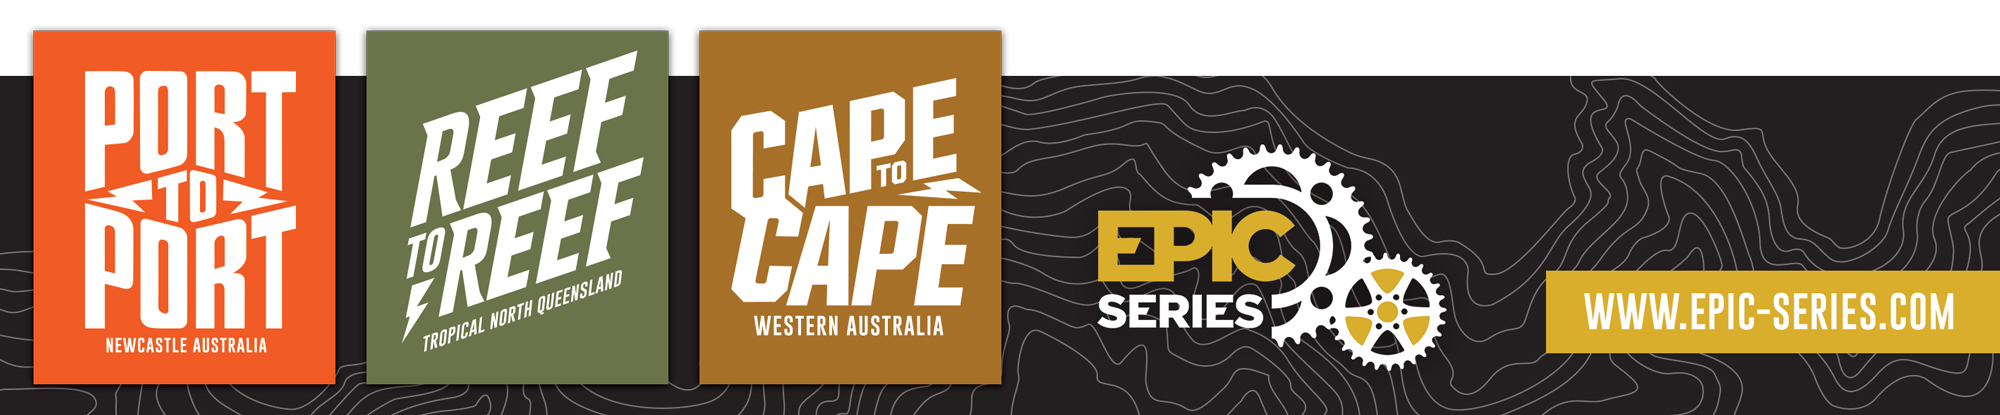 epic series logo banner